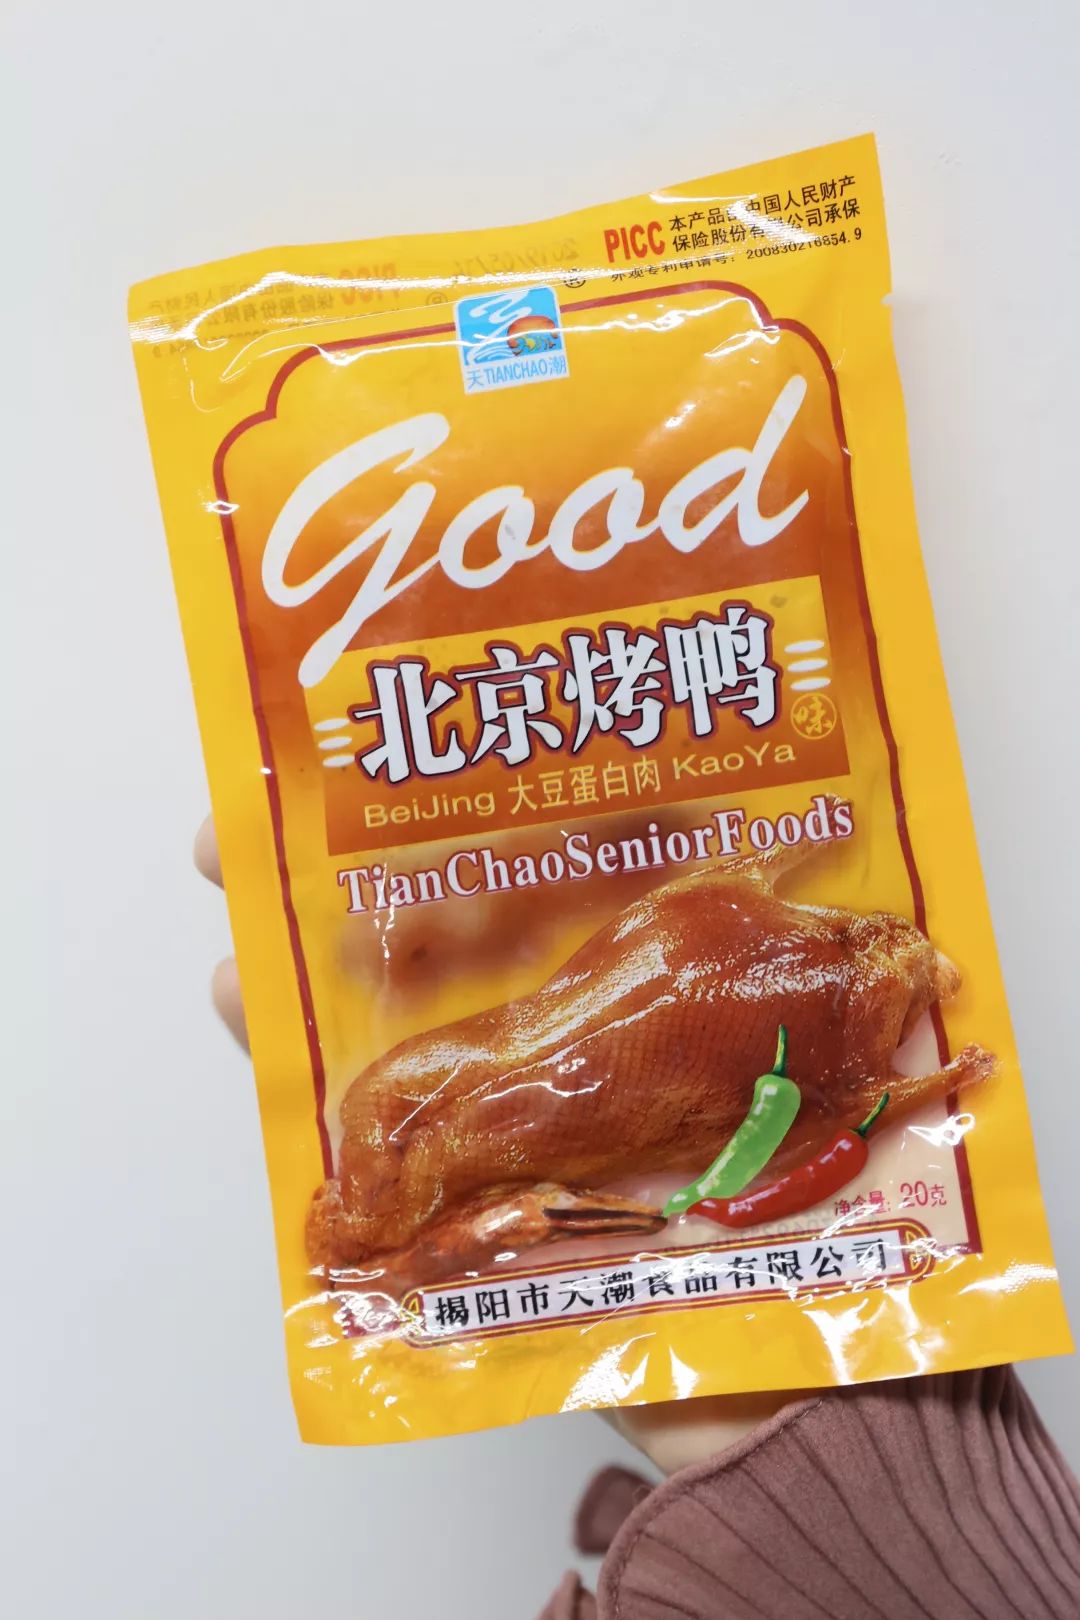 28 小时候没去过北京,对北京烤鸭的印象就来源于这包零闶 .